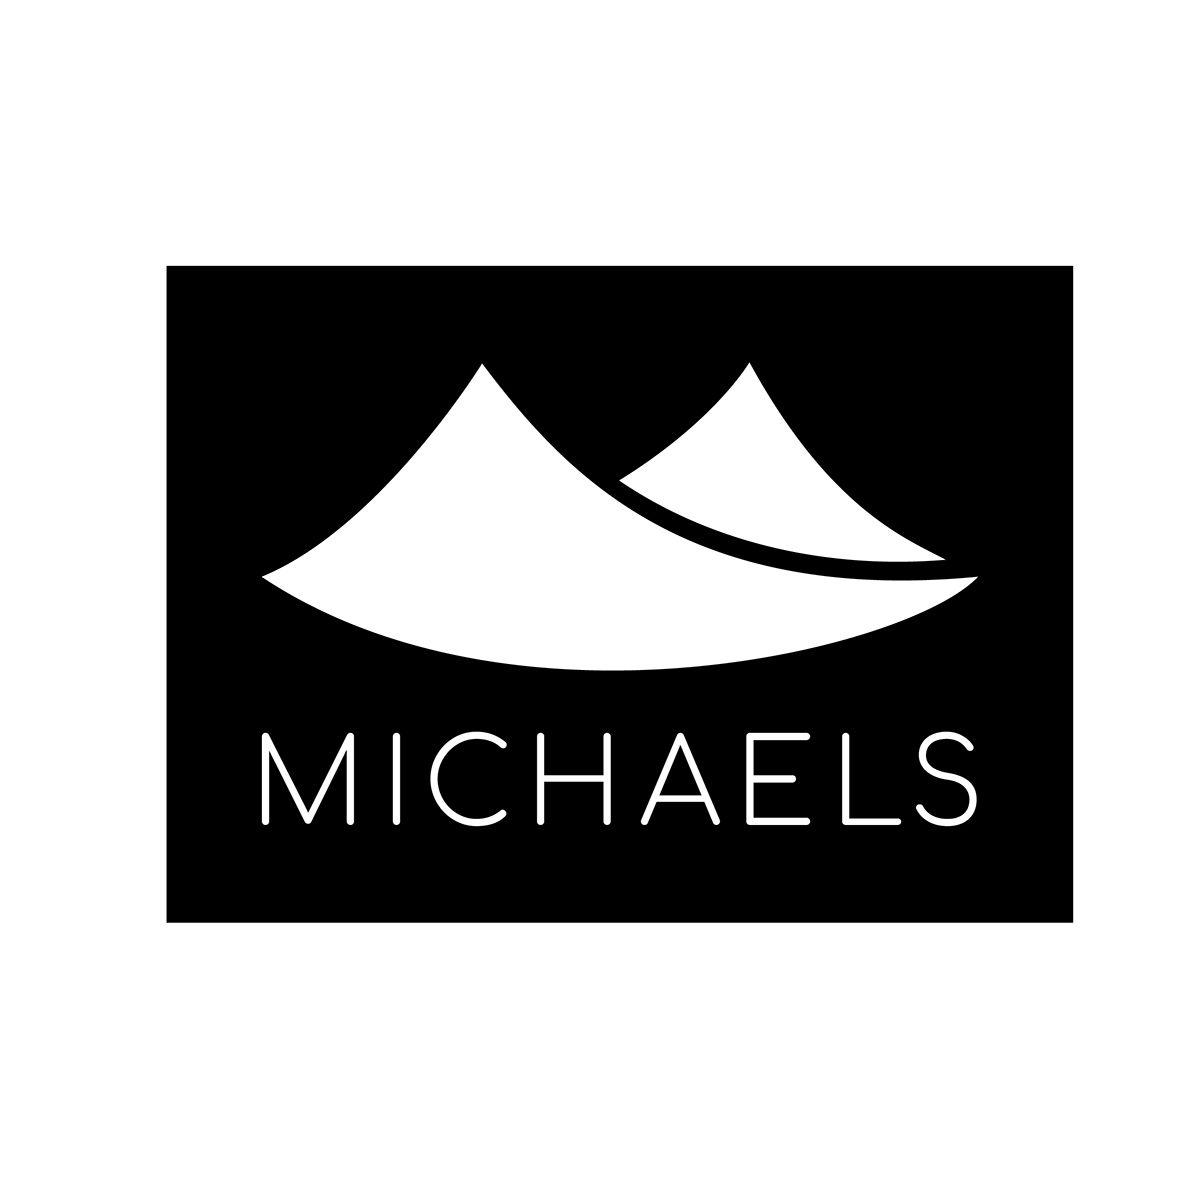 Michaels Make Creativity Happen Logo - Michaels Store Branding on Behance